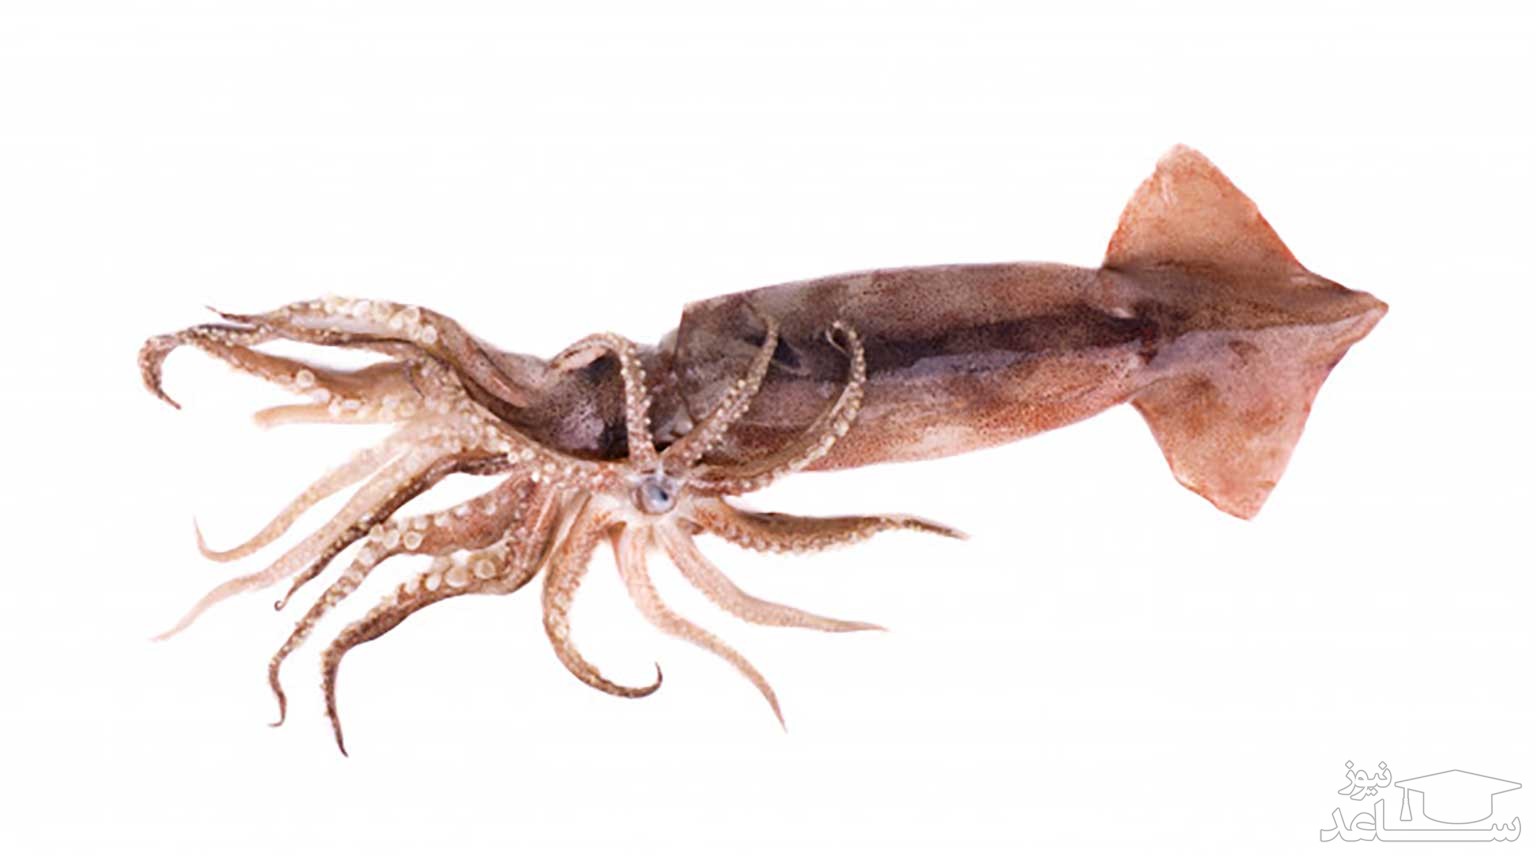 ماهی مرکب